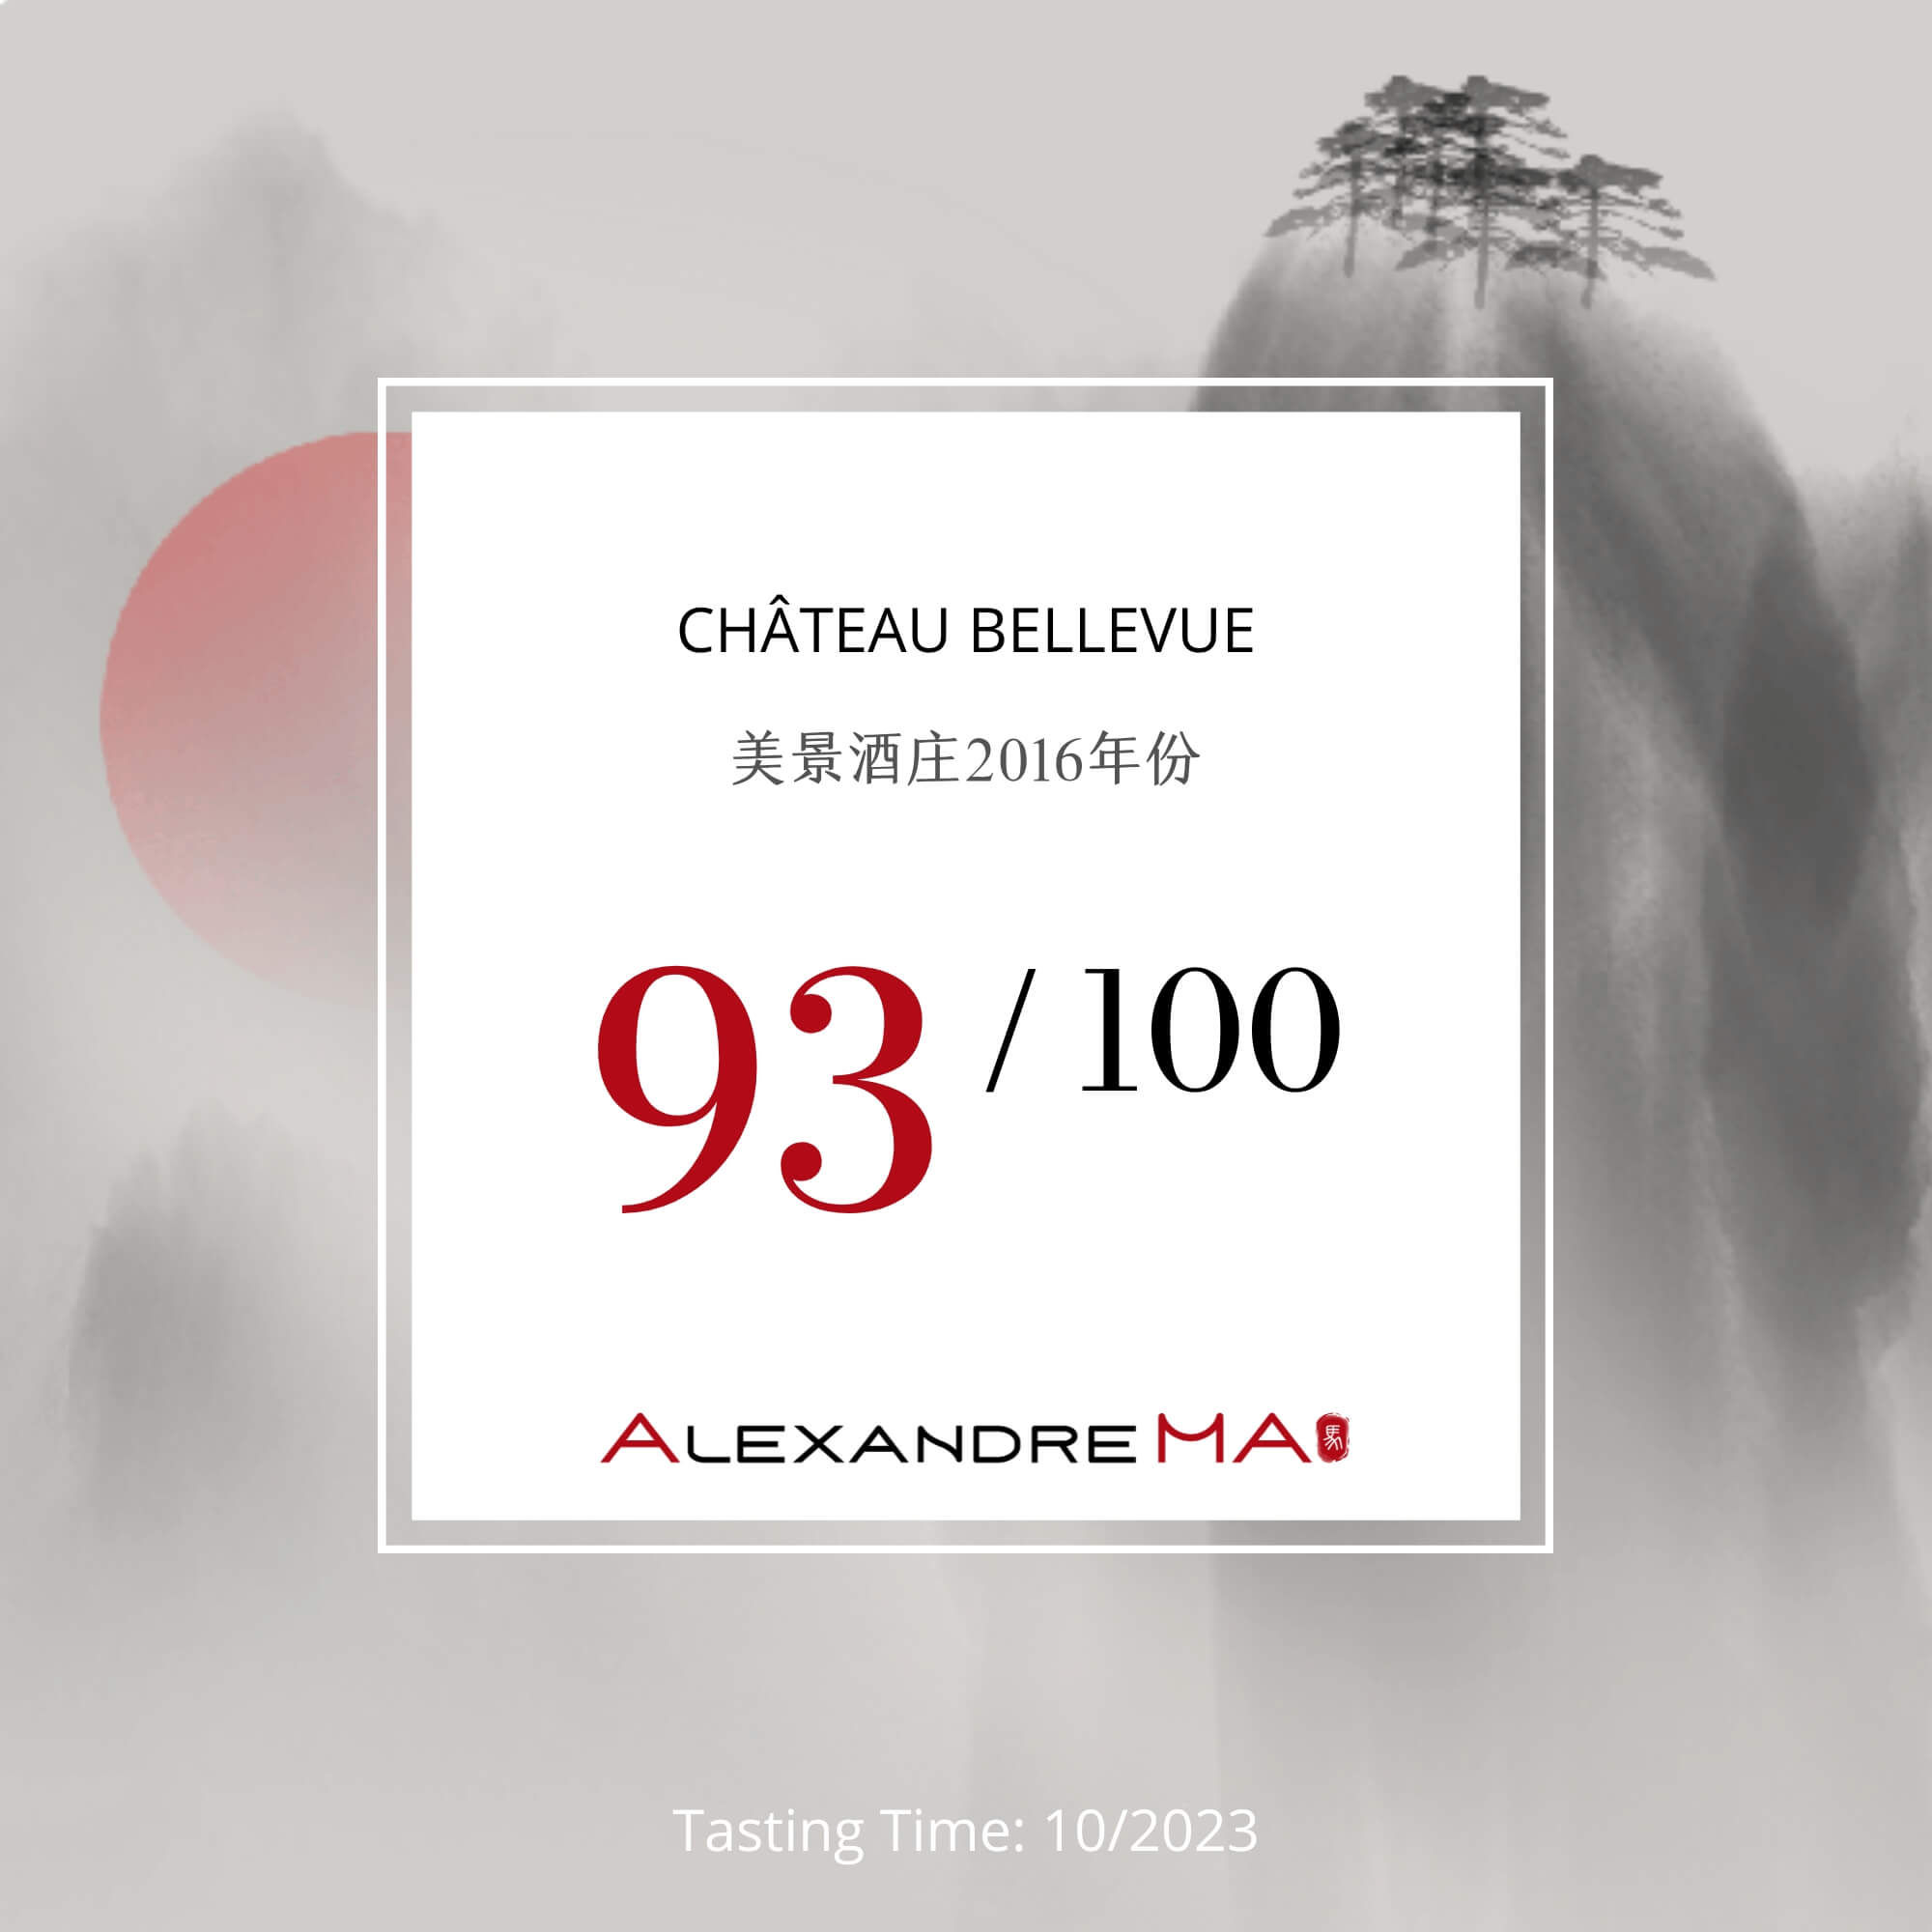 Château Bellevue 2016 美景酒庄 - Alexandre Ma